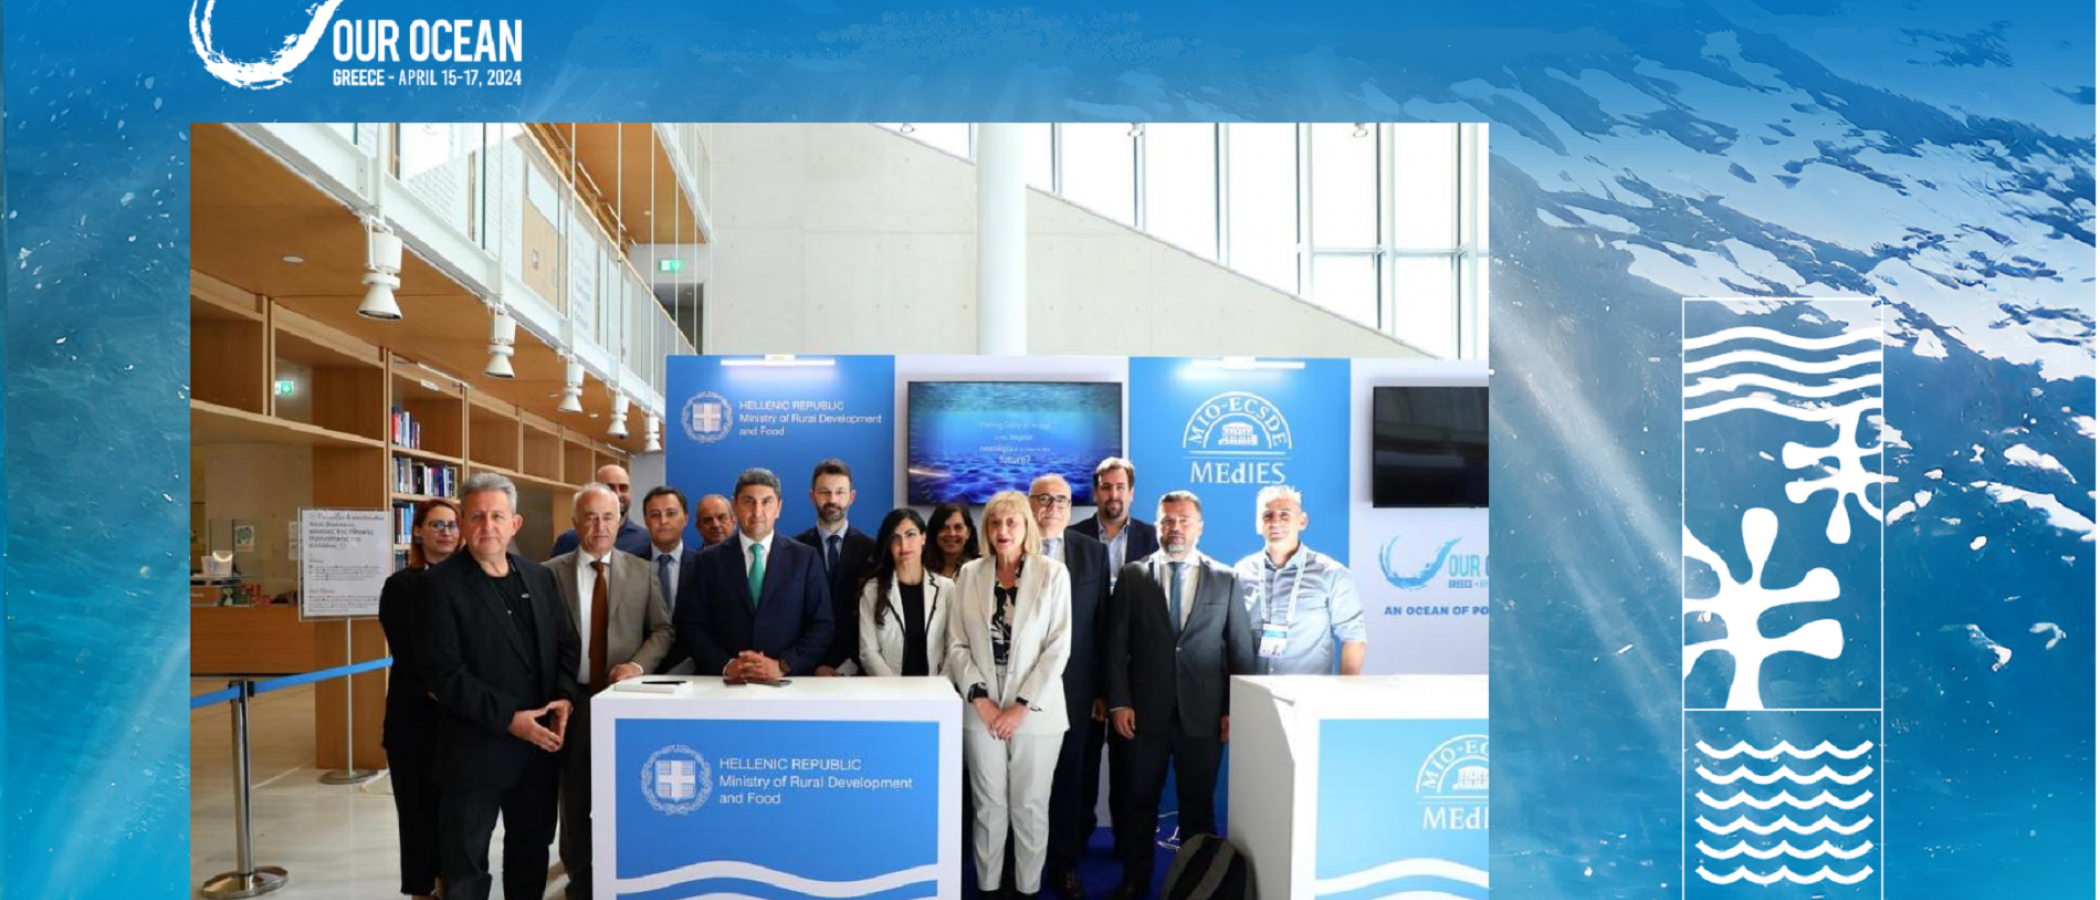 Συμμετοχή του Γεωπονικού Πανεπιστημίου Αθηνών στο Διεθνές Συνέδριο  OUR OCEAN CONFERENCE 2024